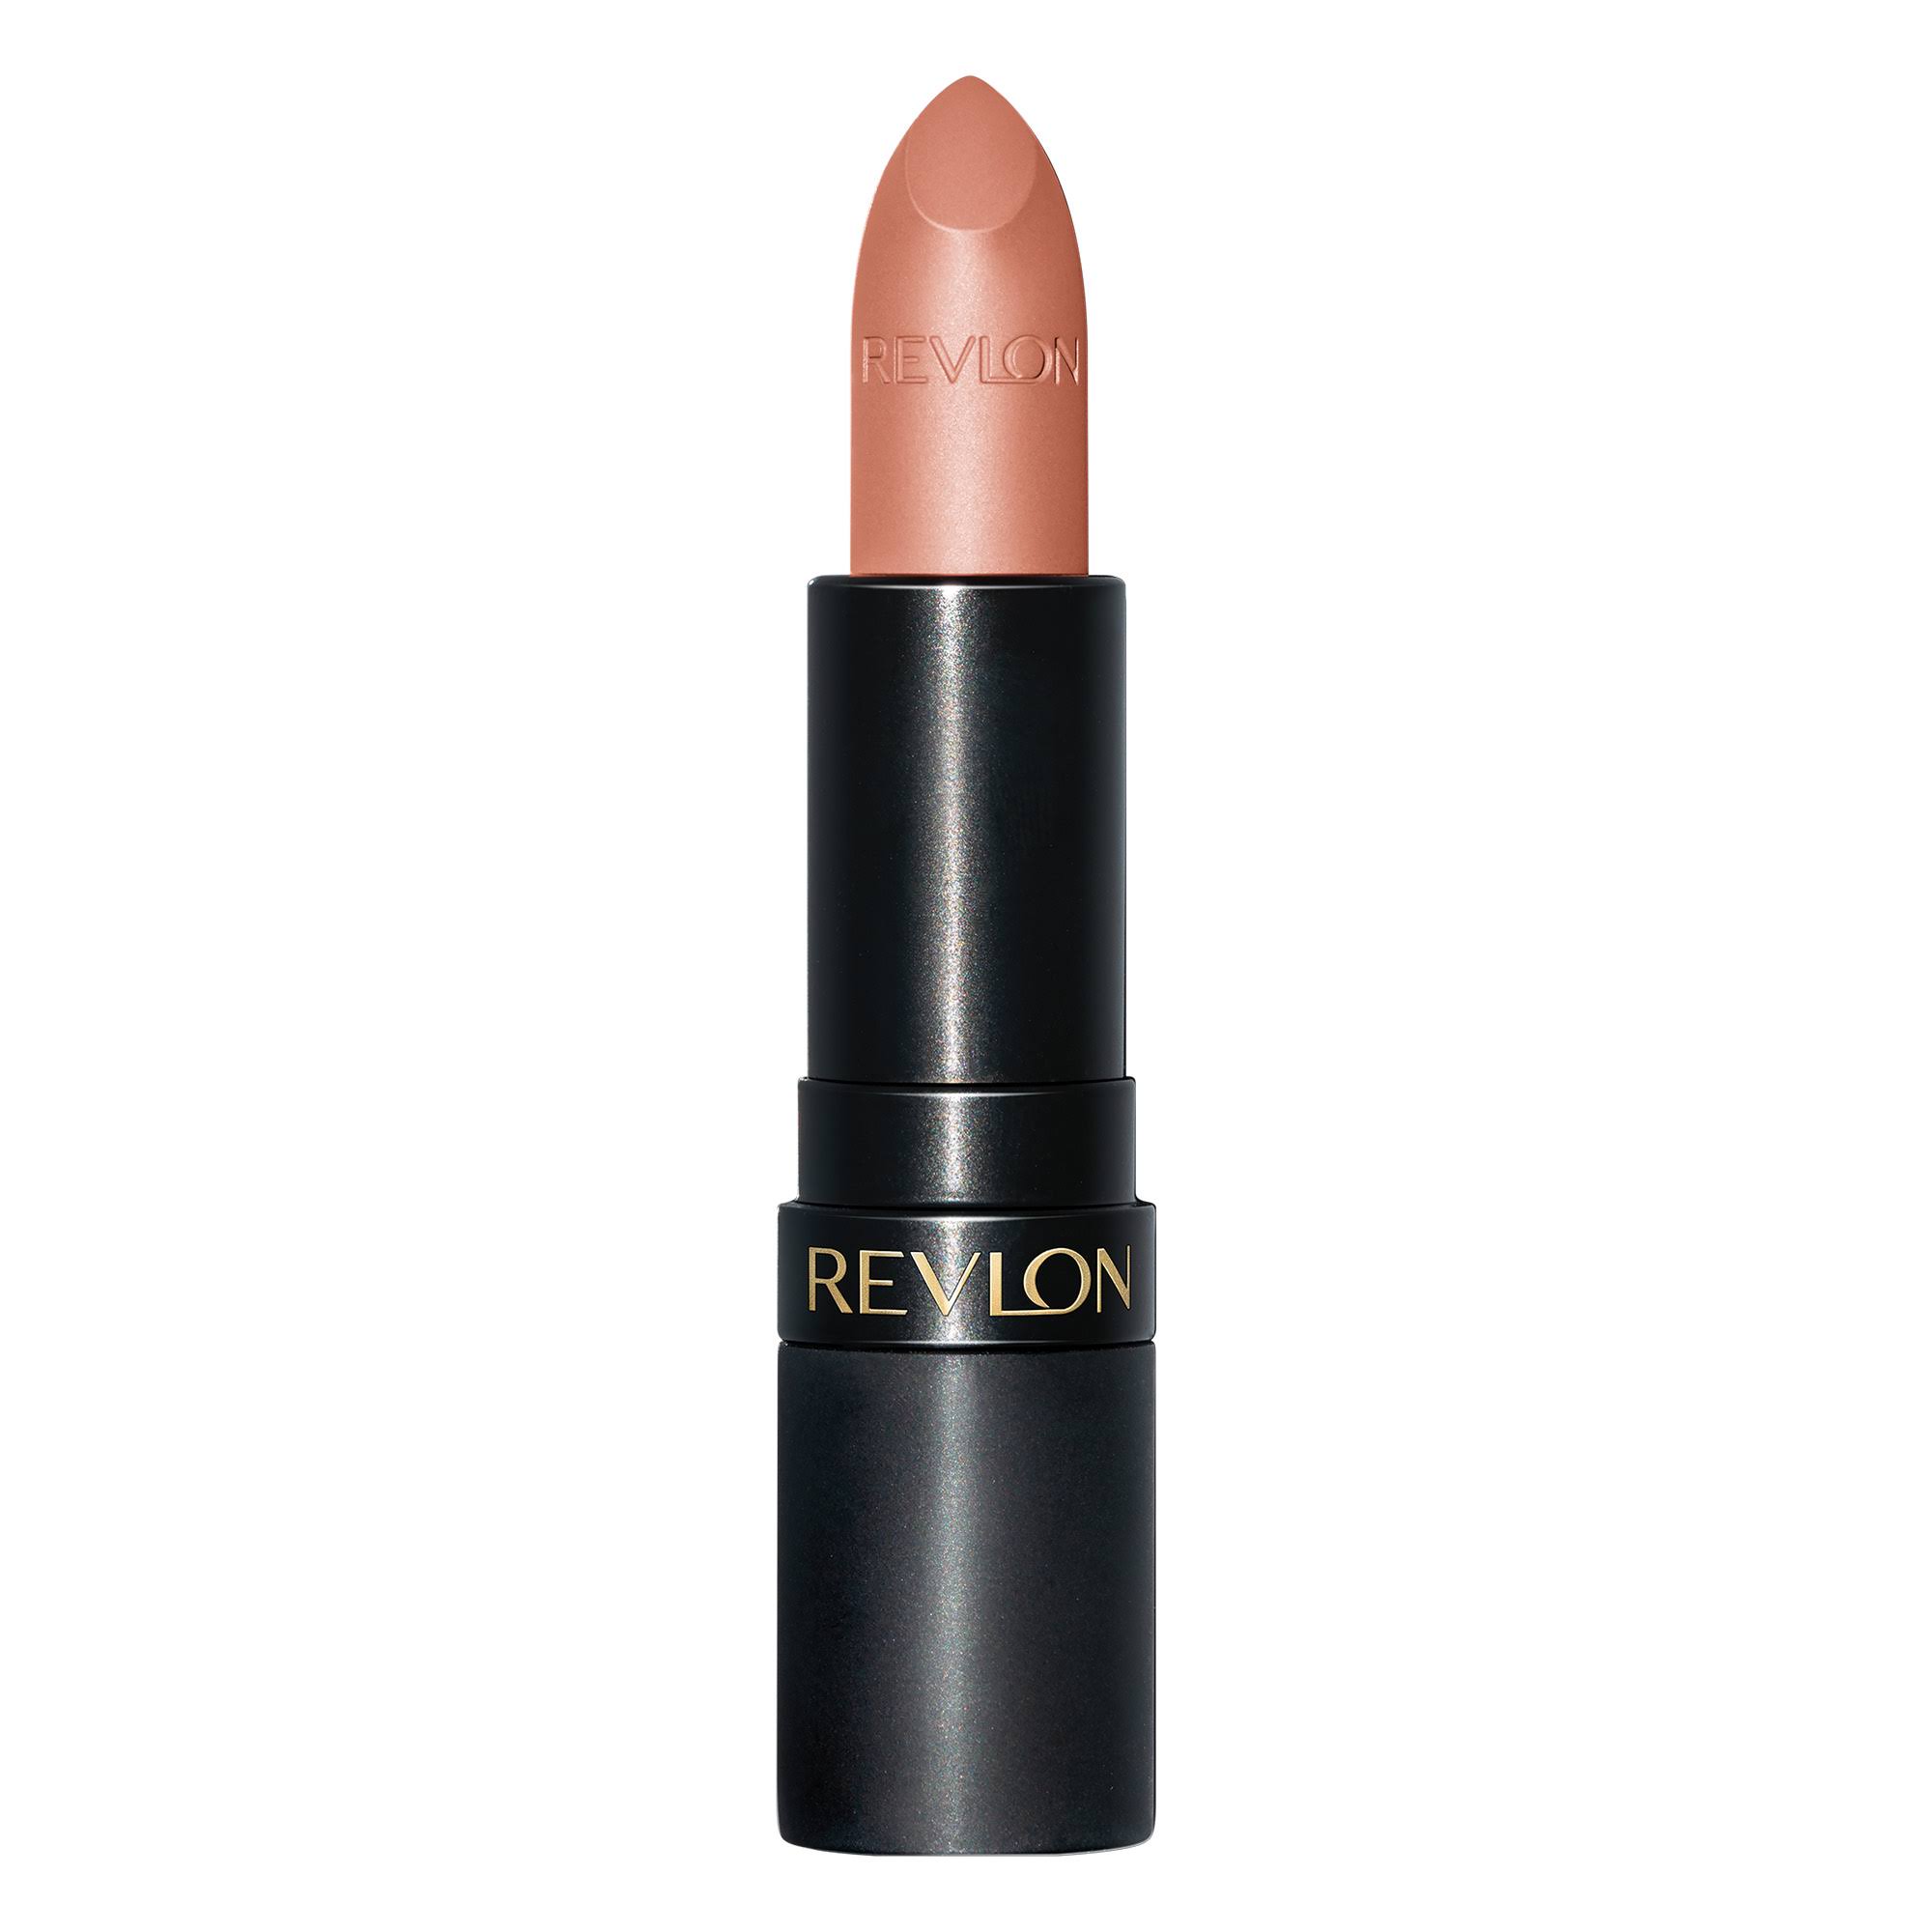 Revlon Super Lustrous Lipstick, If I Want To 001, Matte - 0.15 oz